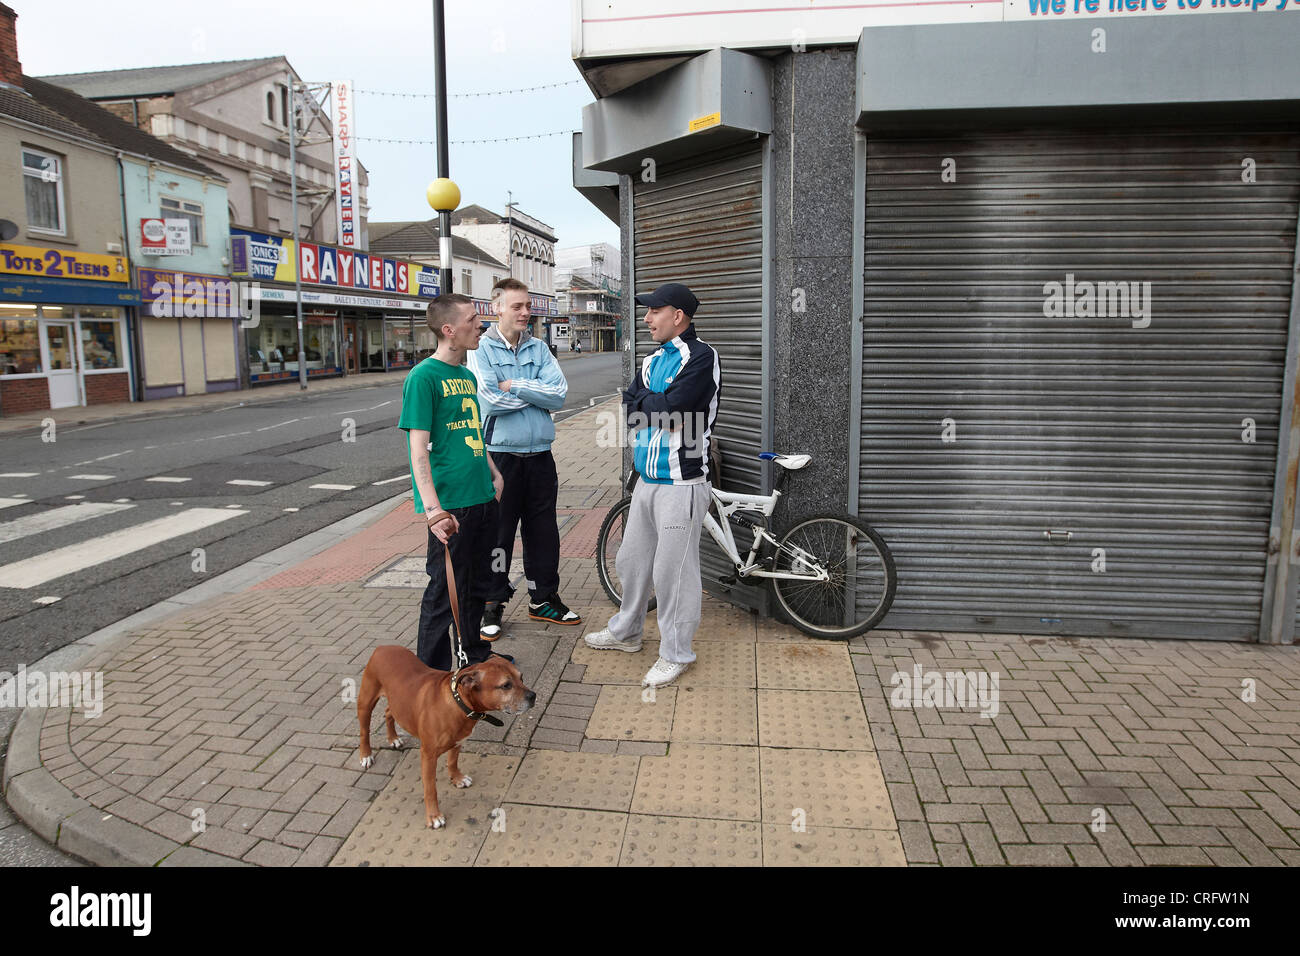 Grimsby Scène de rue - jeunes hommes sur coin de rue avec chien, Freeman Street, Grimsby, Lincolnshire, Angleterre, RU Banque D'Images